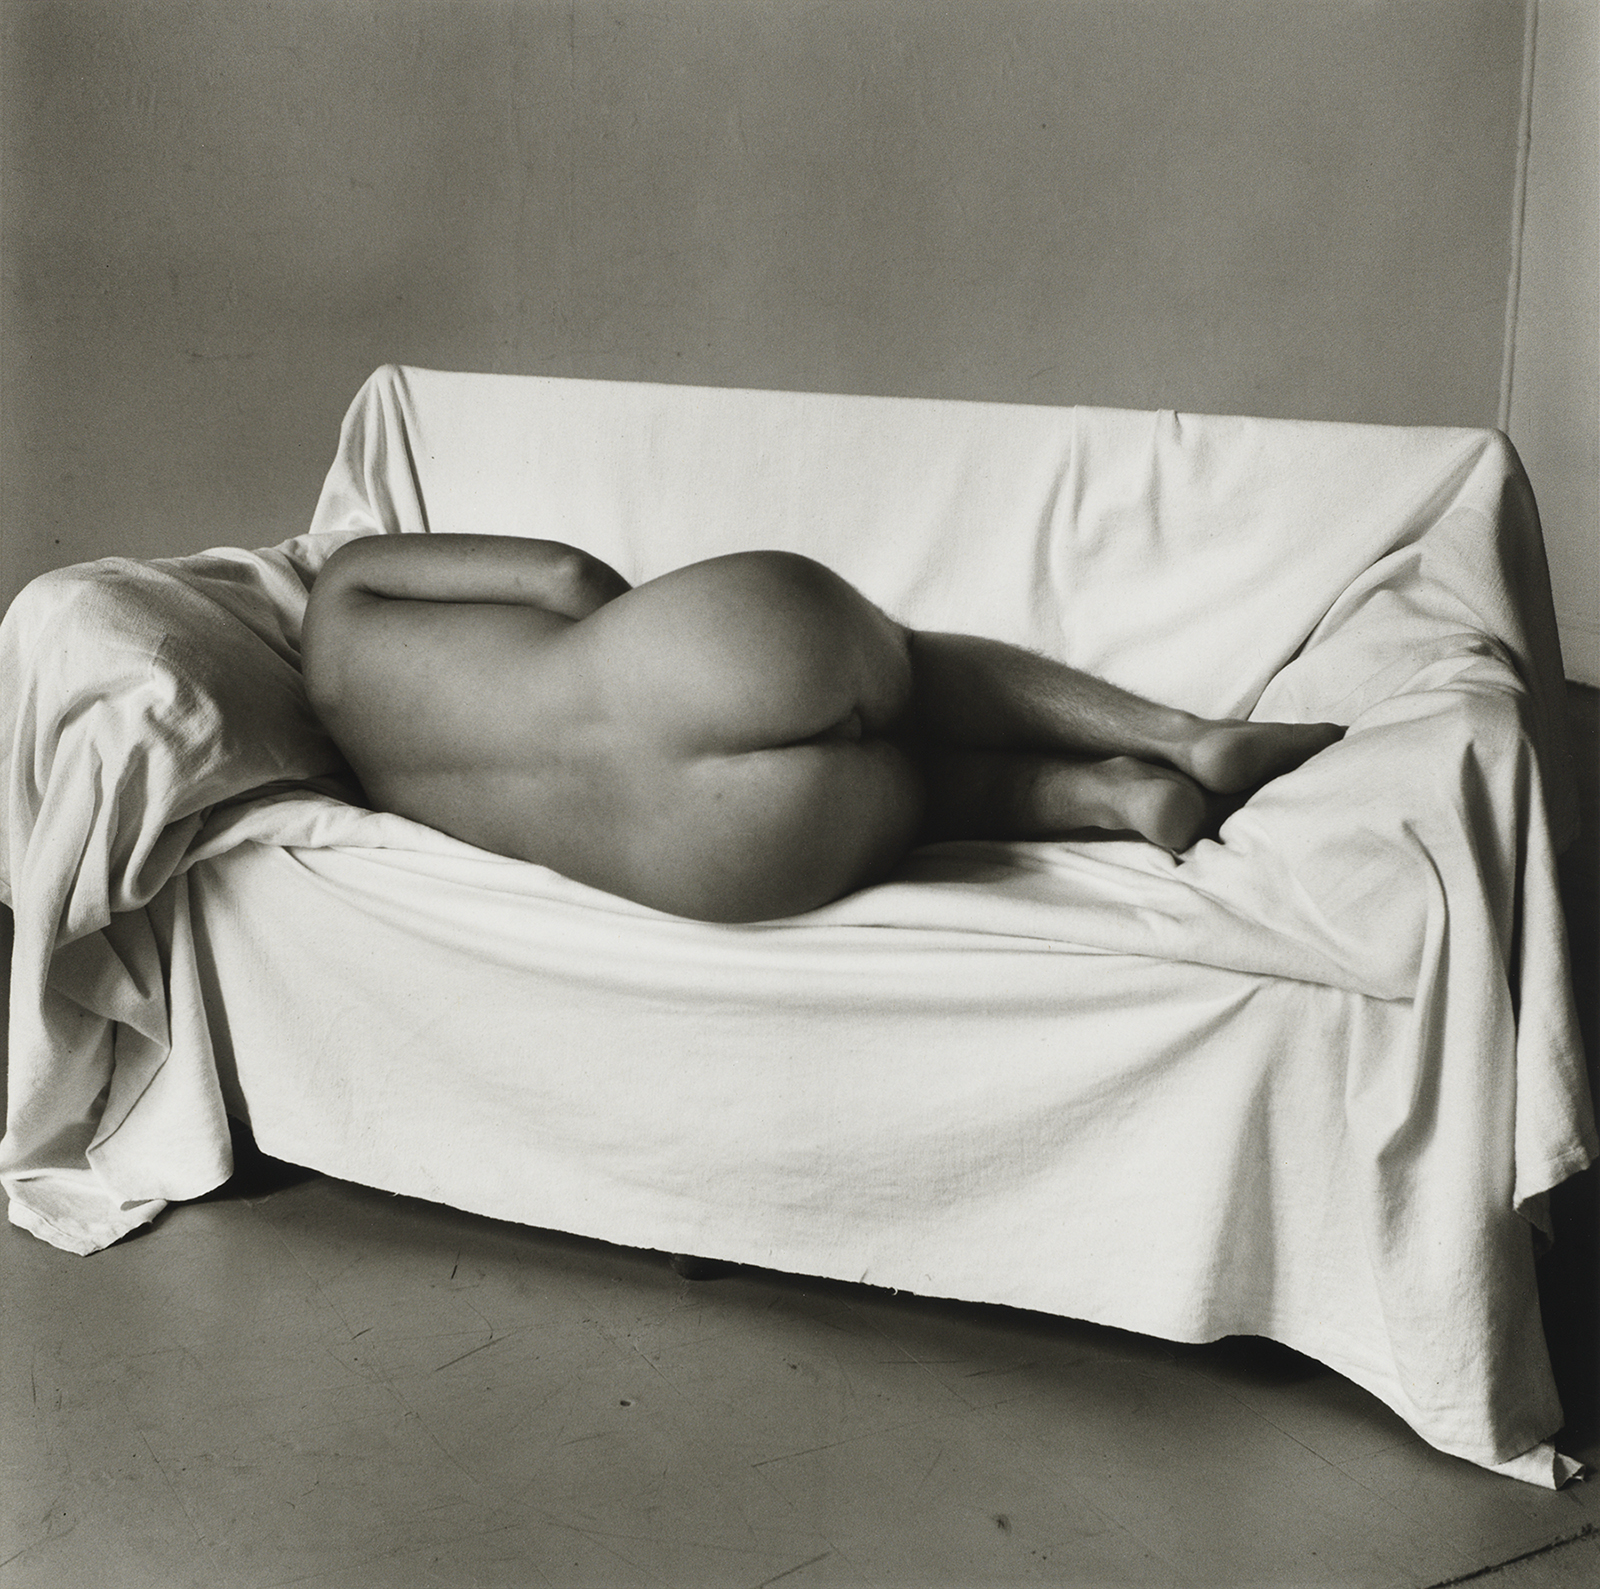 Peter Hujar ; nude ; photography ; New York